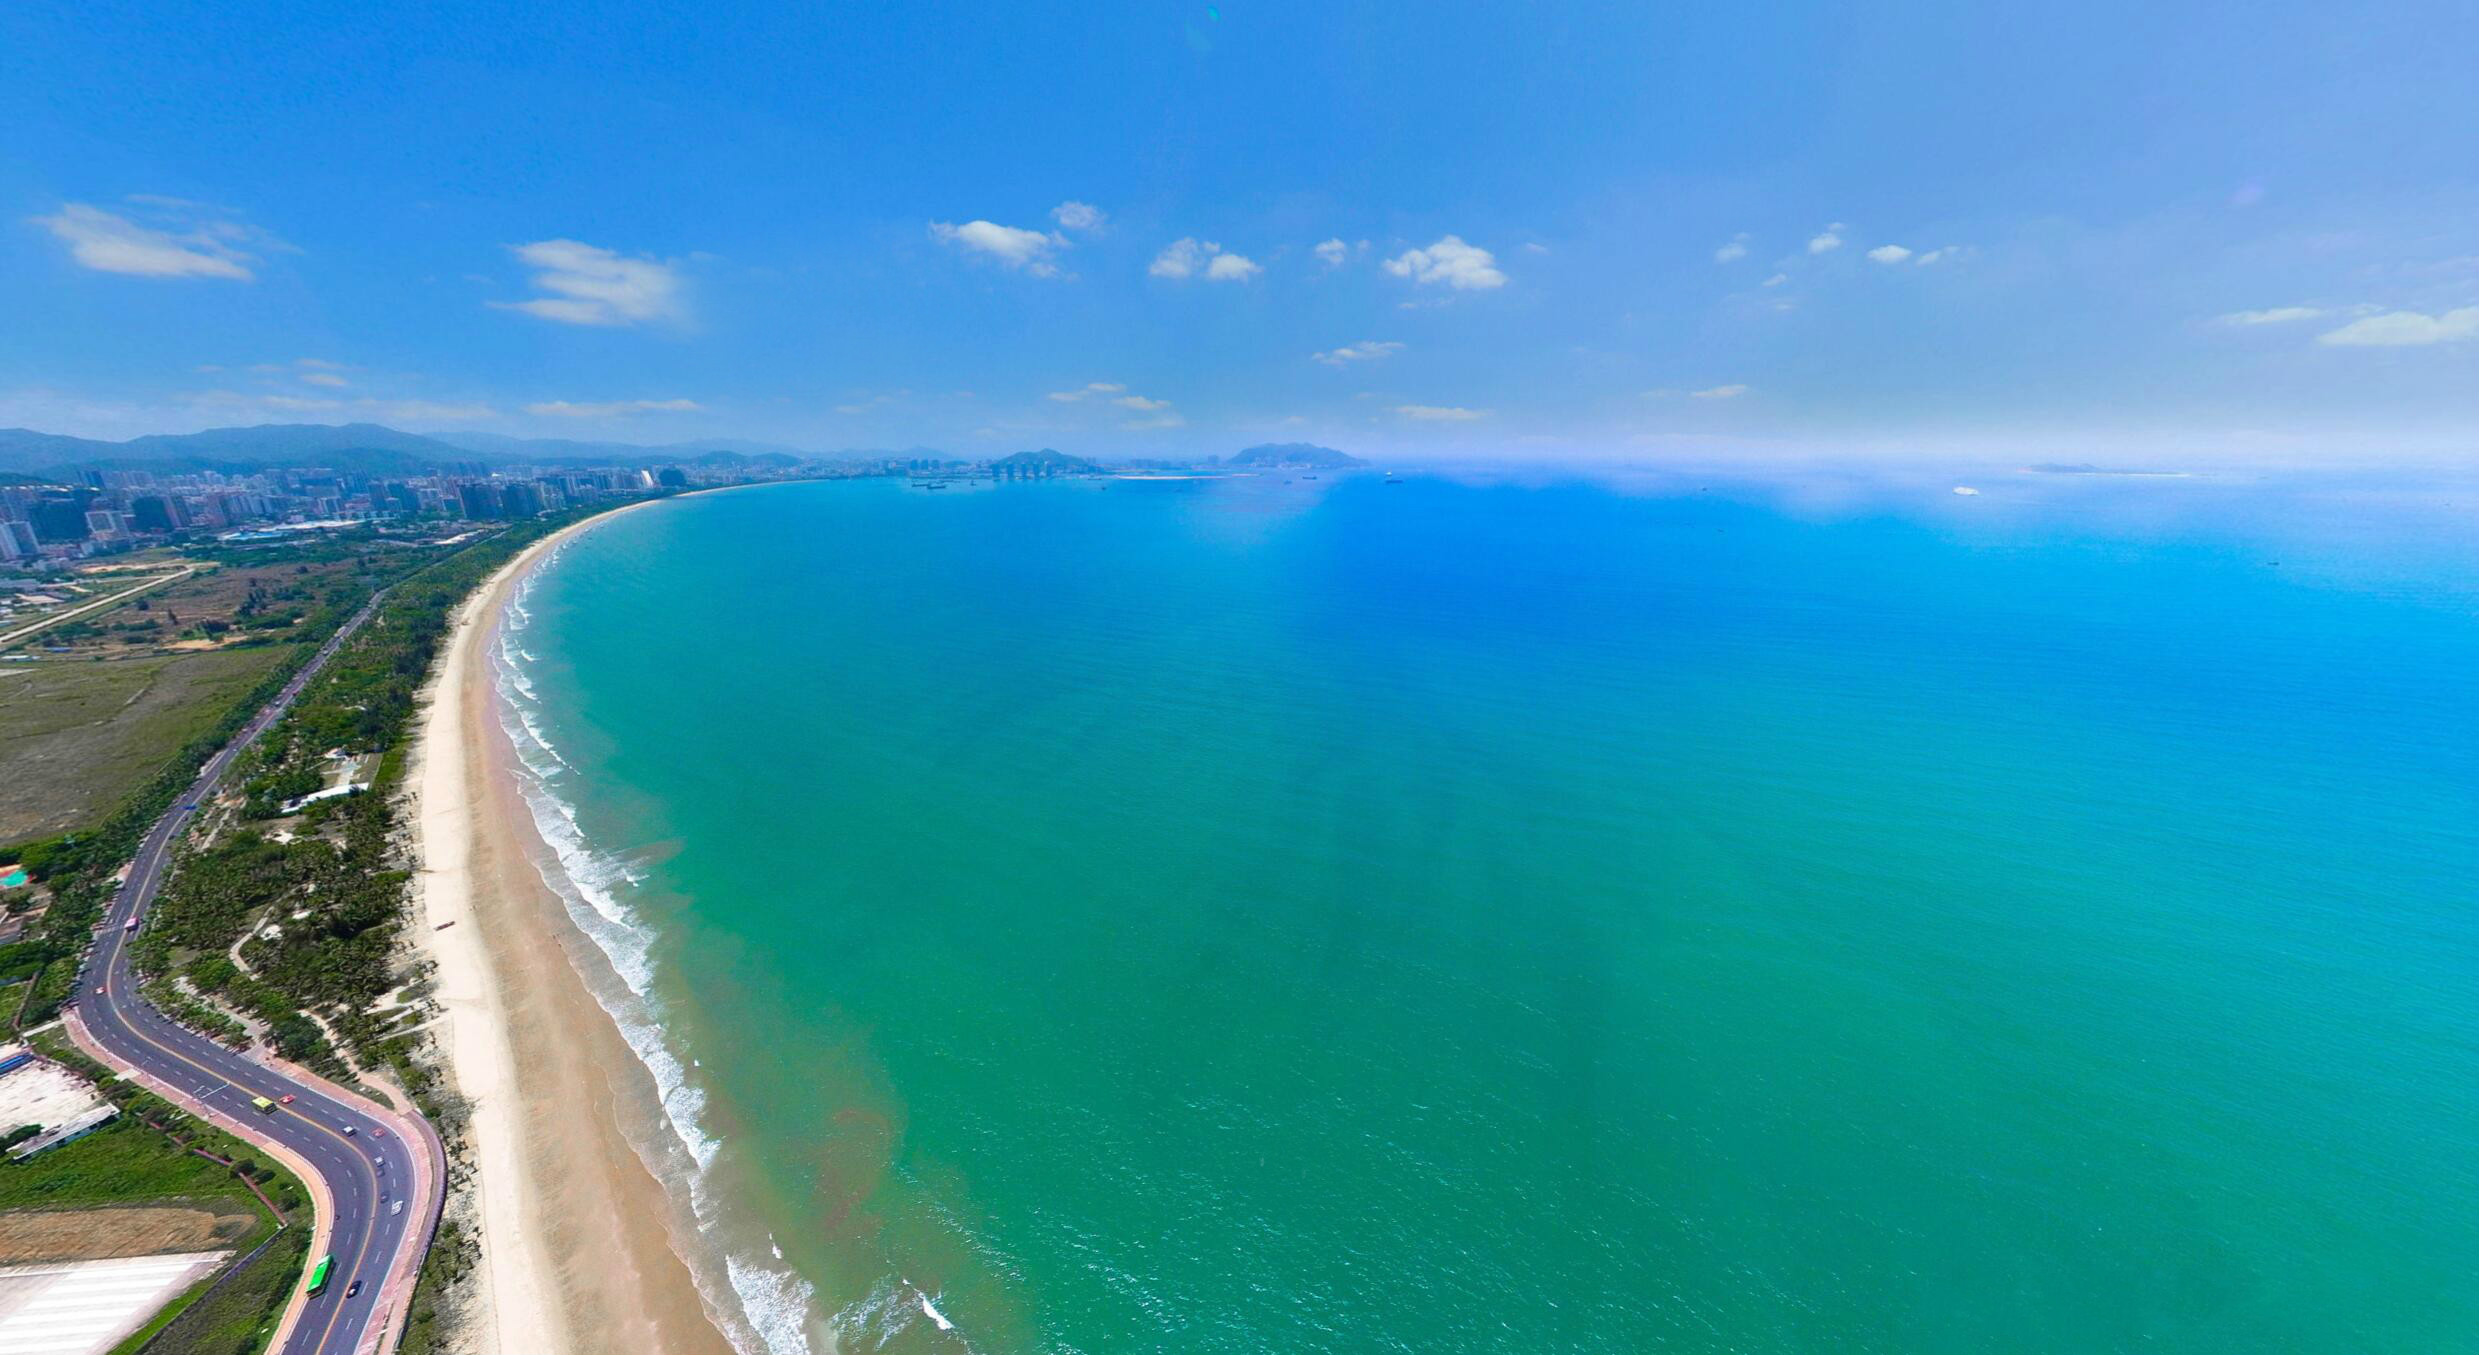 三亚湾:这里是看海最佳胜地,很长很长的沙滩,隔开两边,一面是海,一面